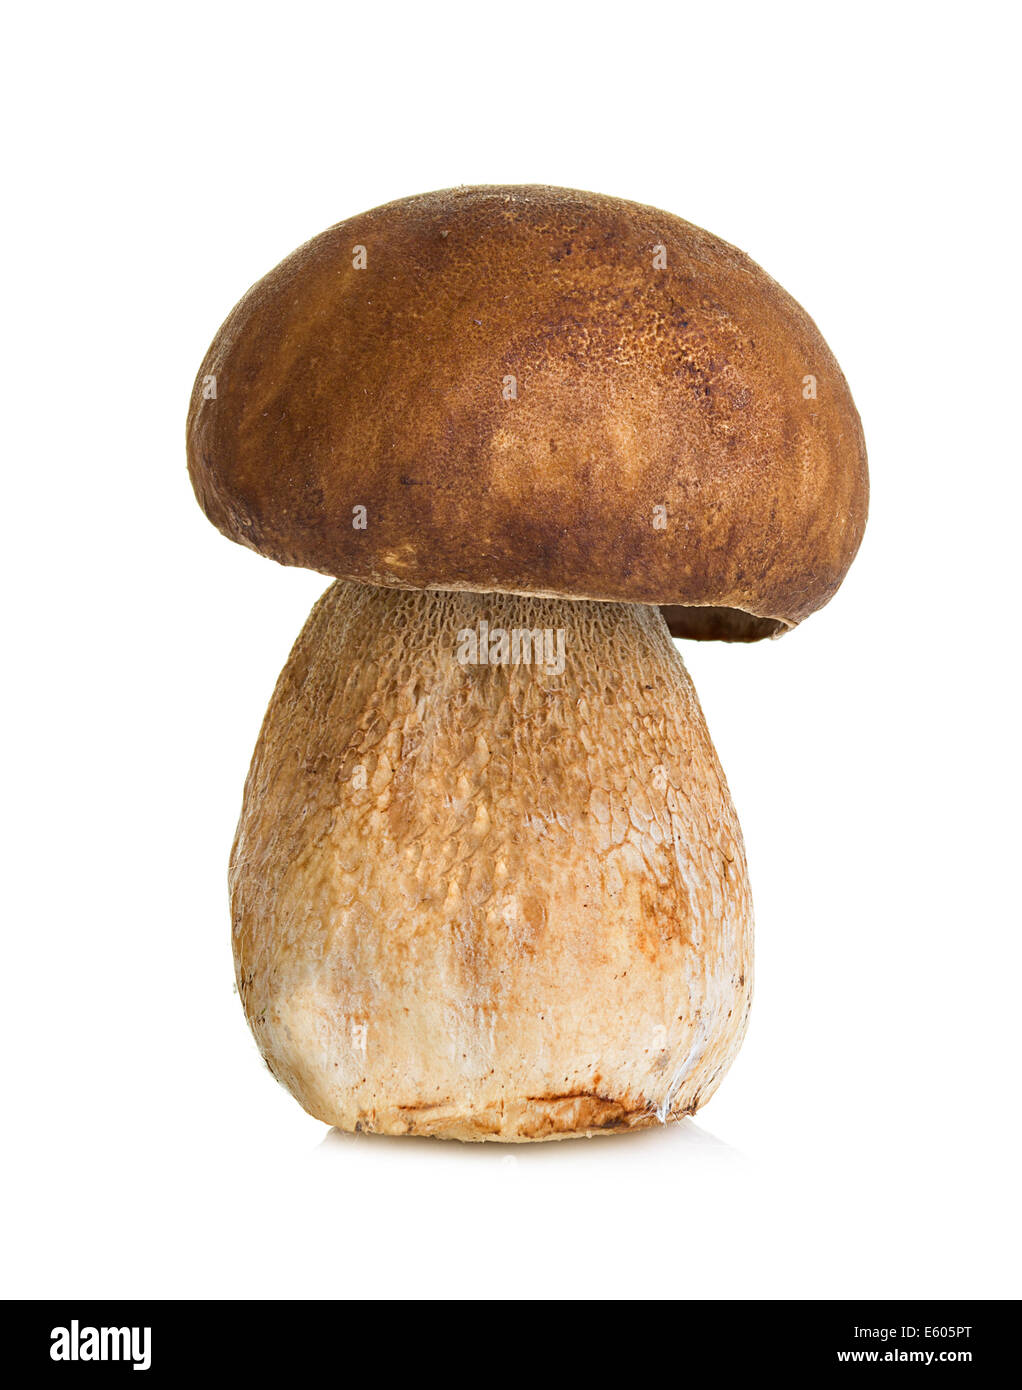 Белый гриб Боровик на белом фоне